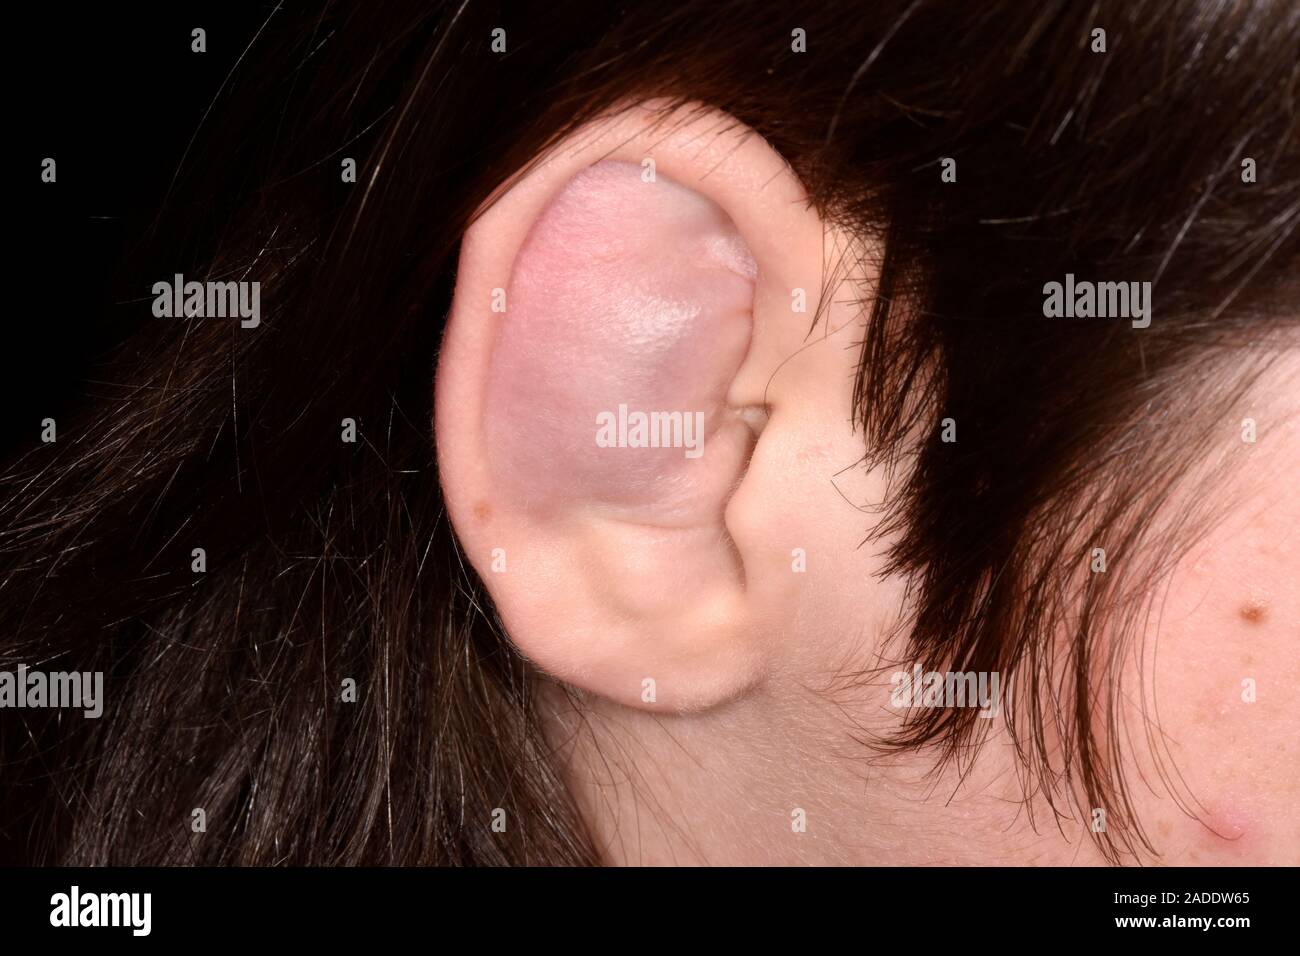 Ohr seroma in der zerebralen Lähmung. Nahaufnahme der geschwollenes Ohr,  eine 16-jährige Patientin mit zerebraler Lähmung. Hier, das Ohr des  Patienten hat swol werden Stockfotografie - Alamy